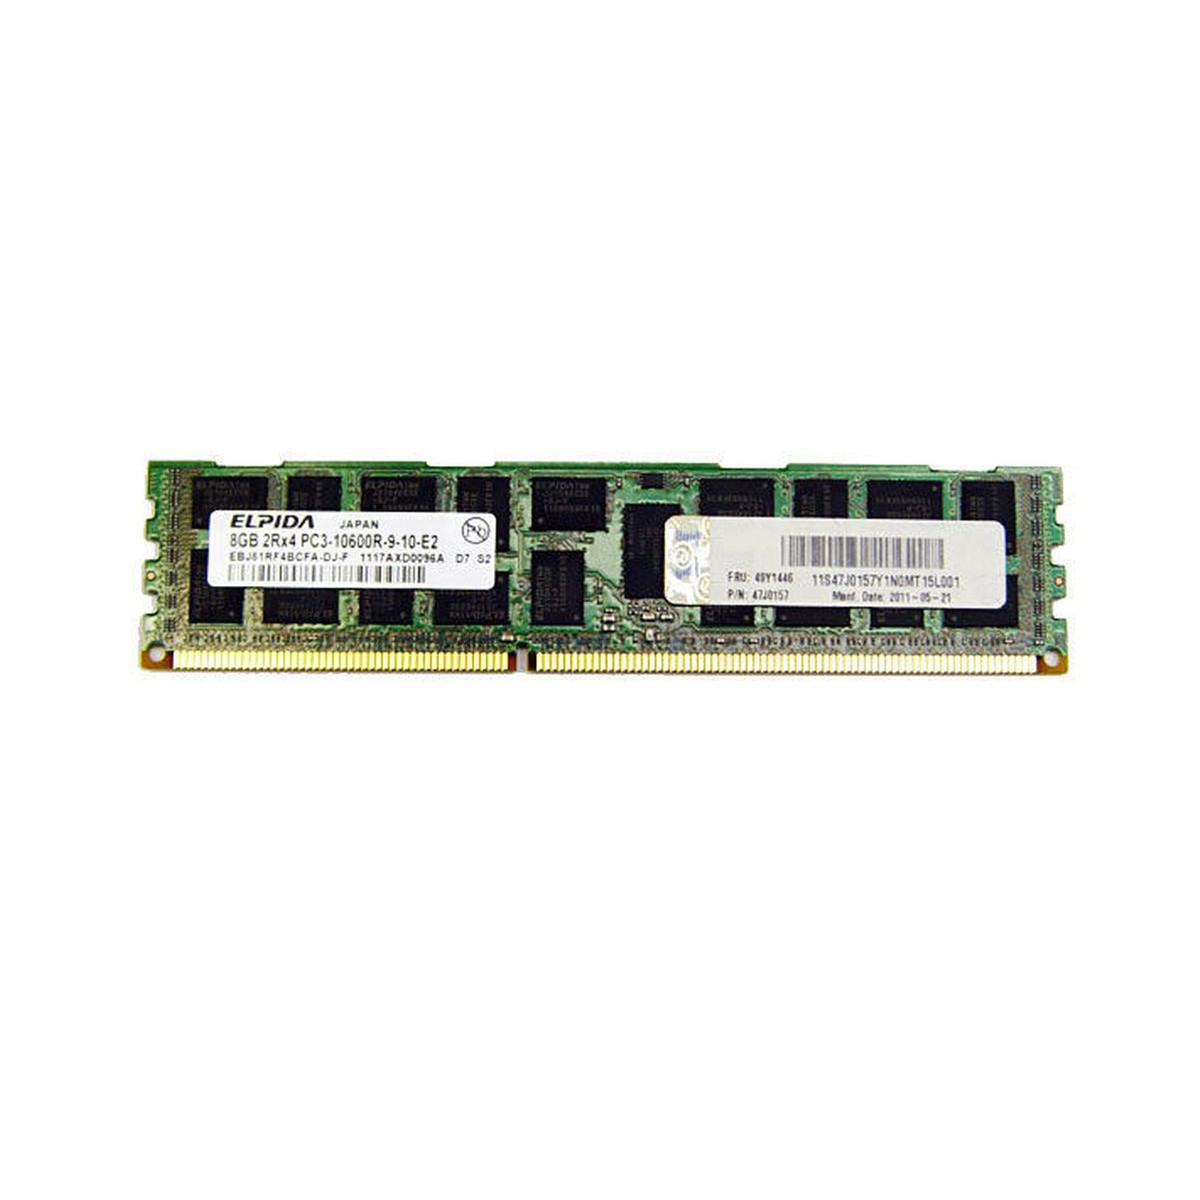 IBM ELPIDA 8GB 2Rx4 PC3-10600R ECC REG 47J0157